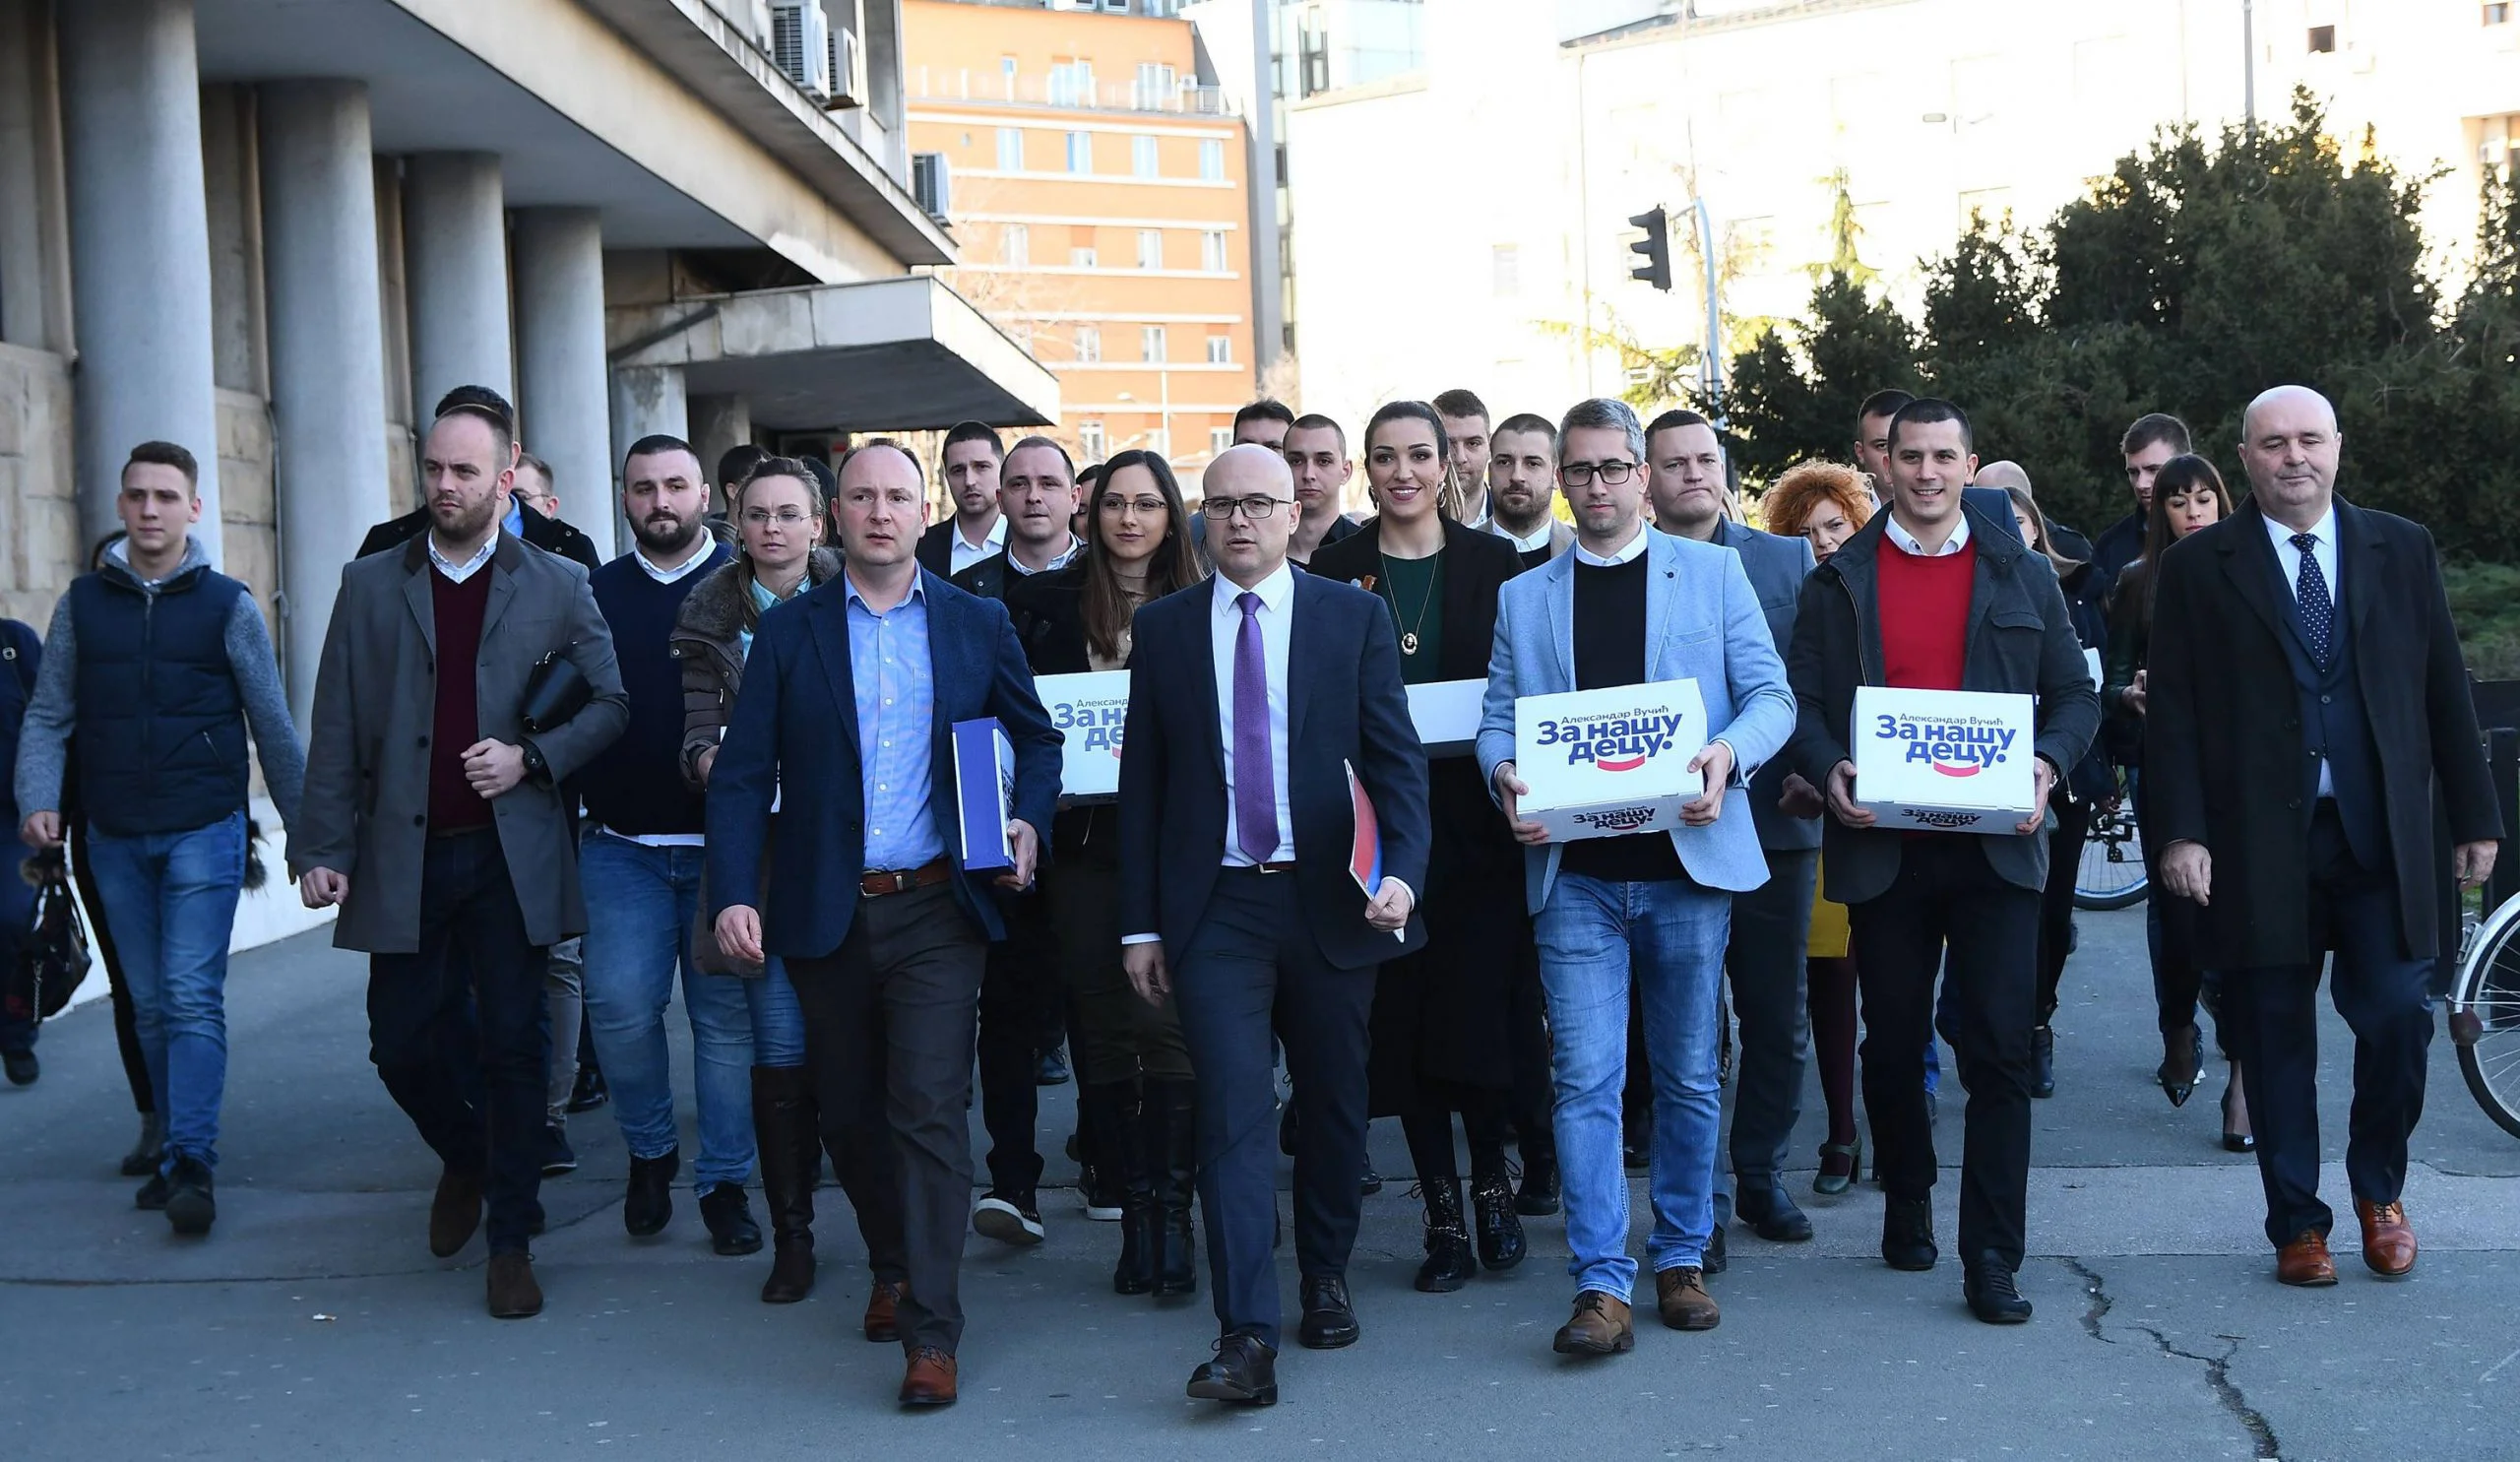 Reakcija SNS na udruživanje opozicije u Novom Sadu: "Kuso i repato" 1